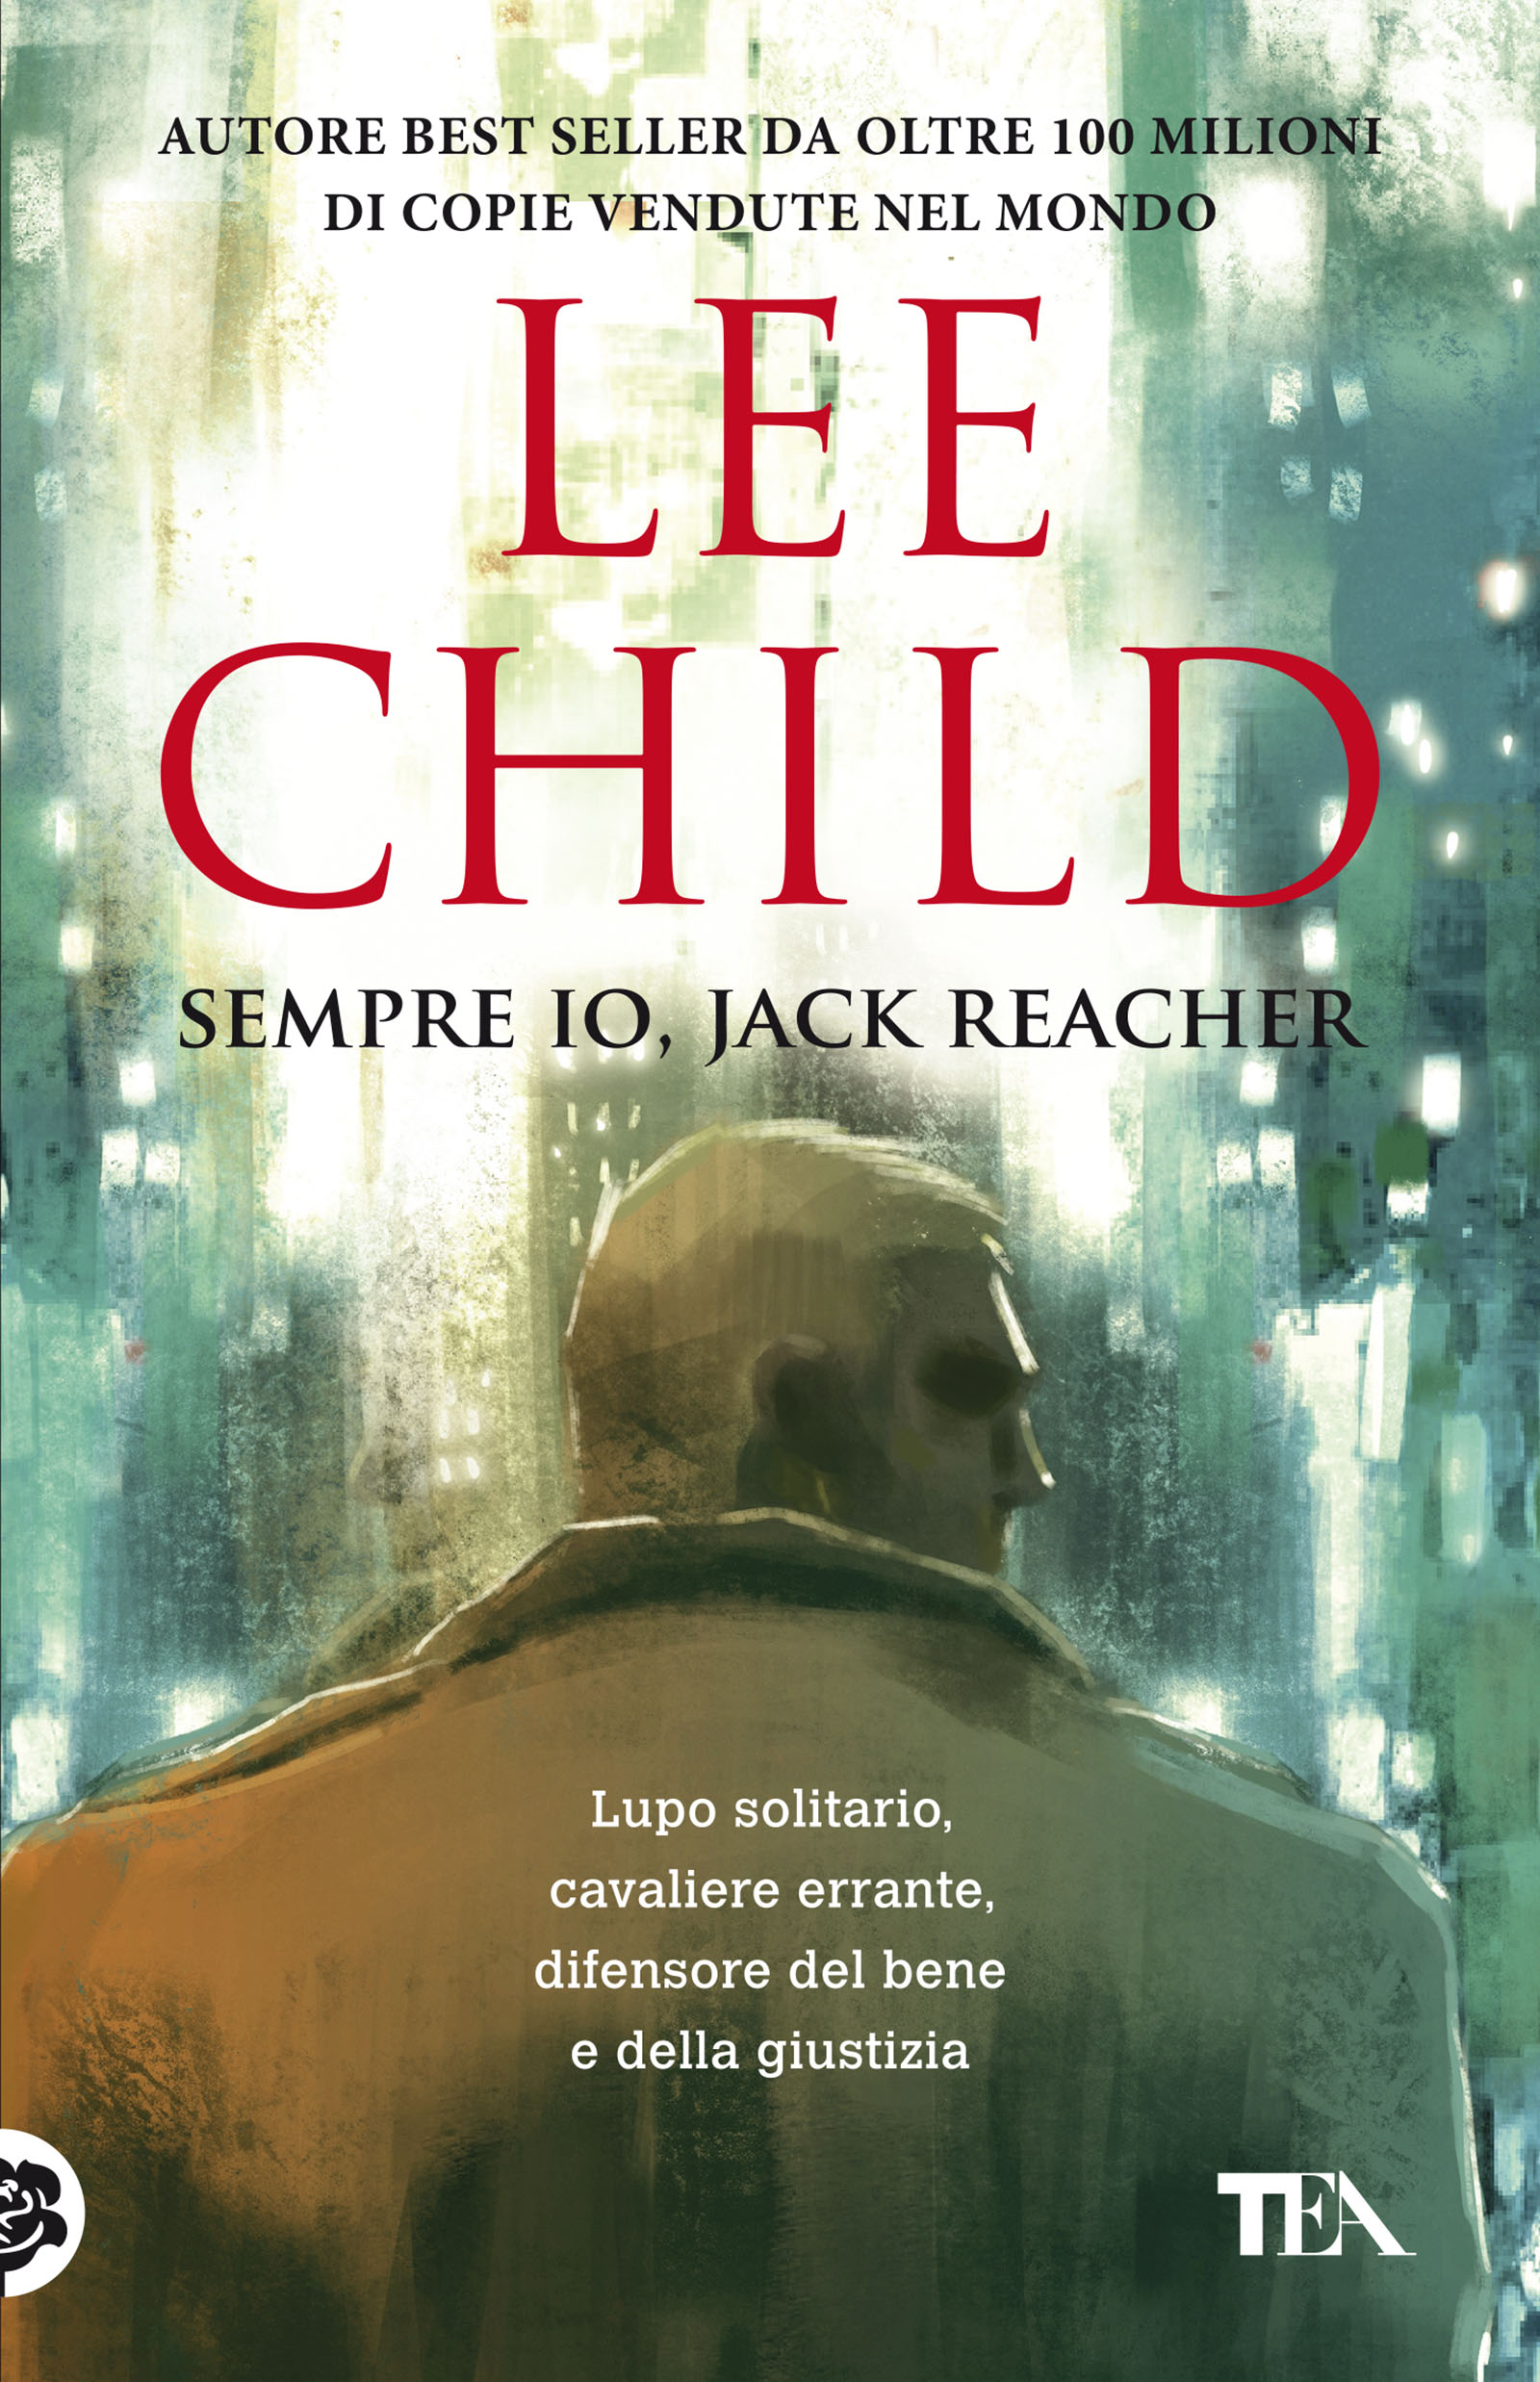 Jack Reacher: guida completa ai libri di Lee Child